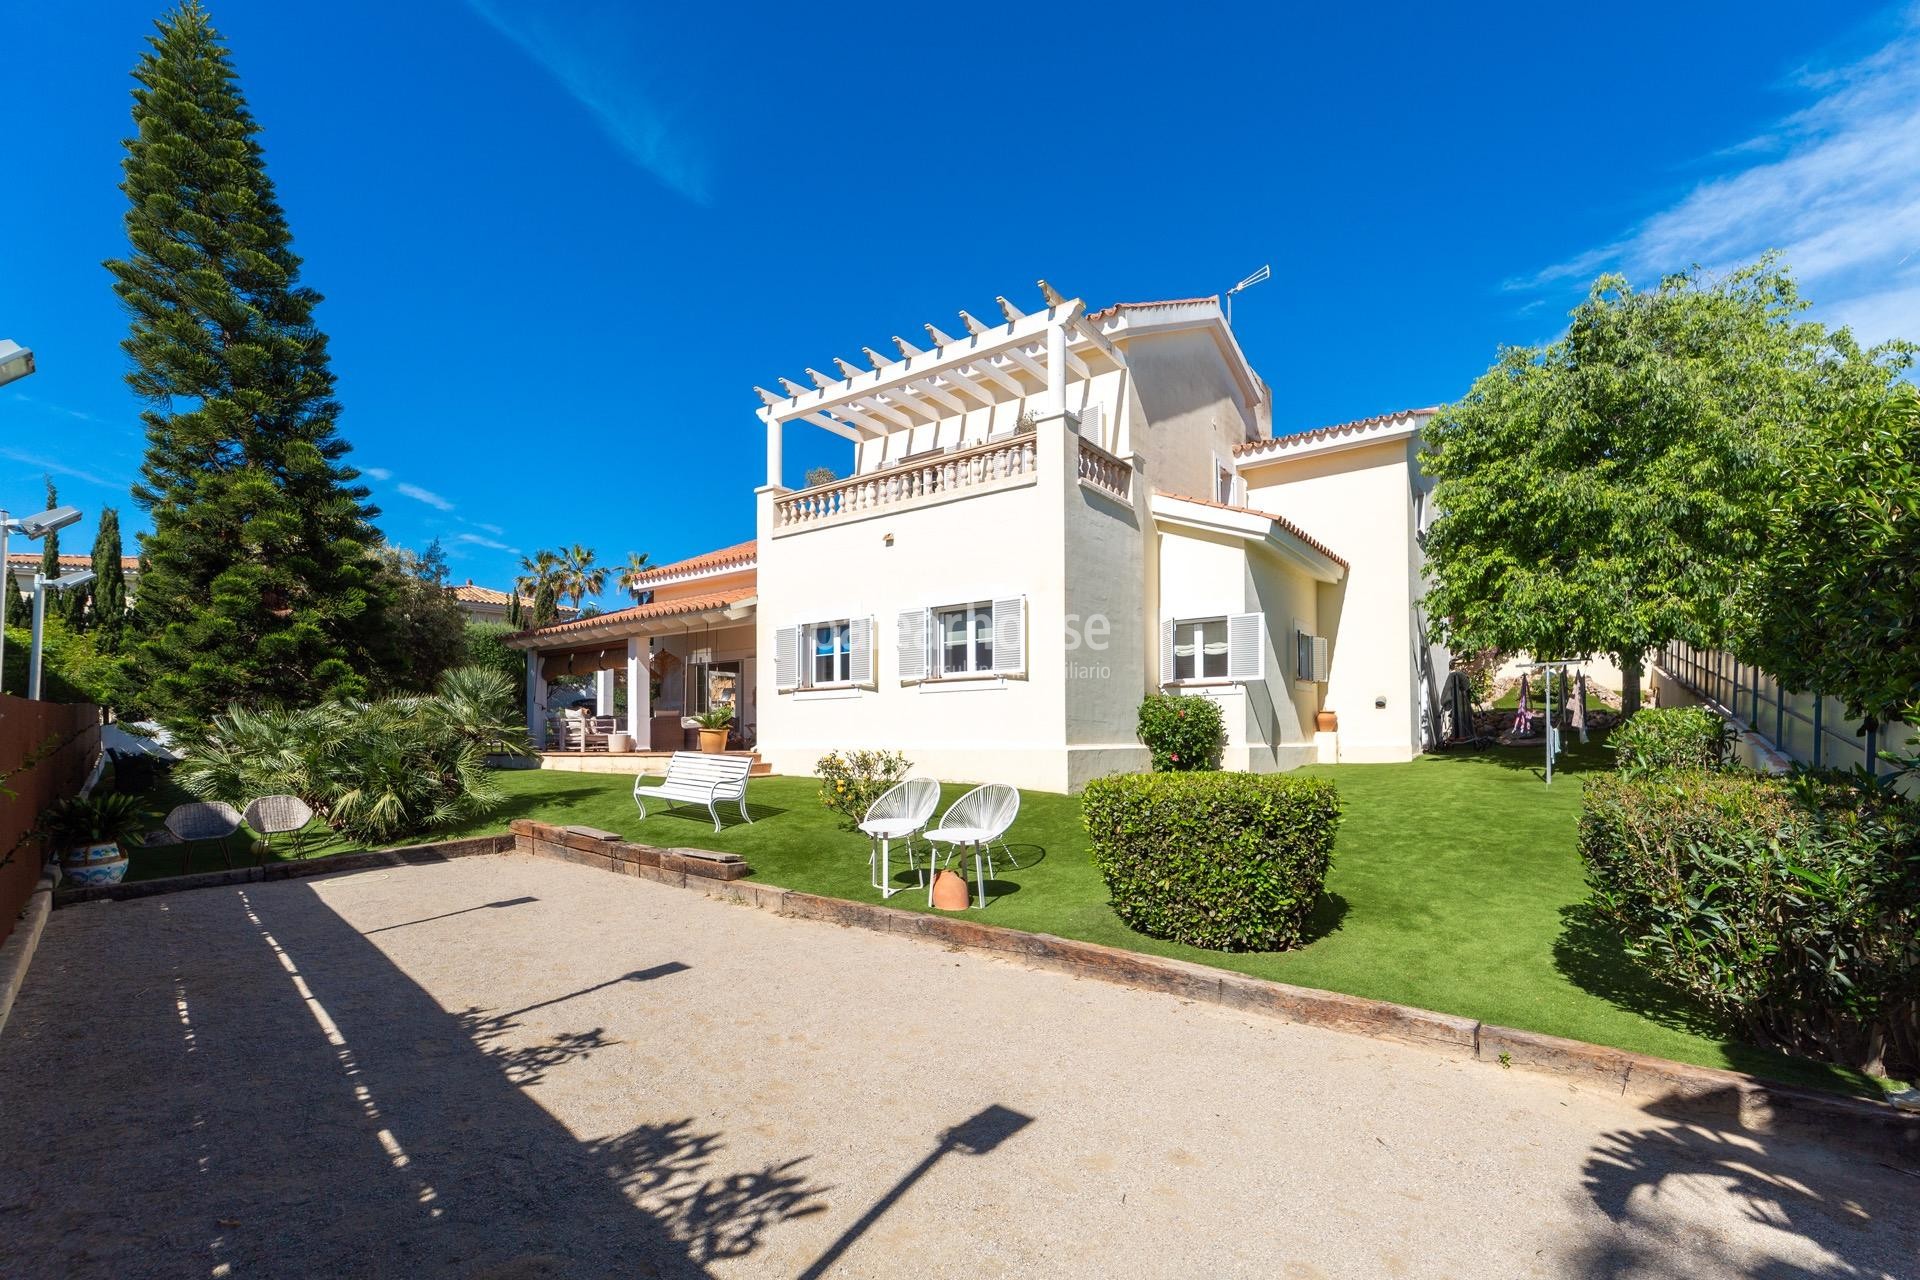 Amplia villa mediterránea en Santa Ponsa abierta a terrazas y grandes jardines con piscina